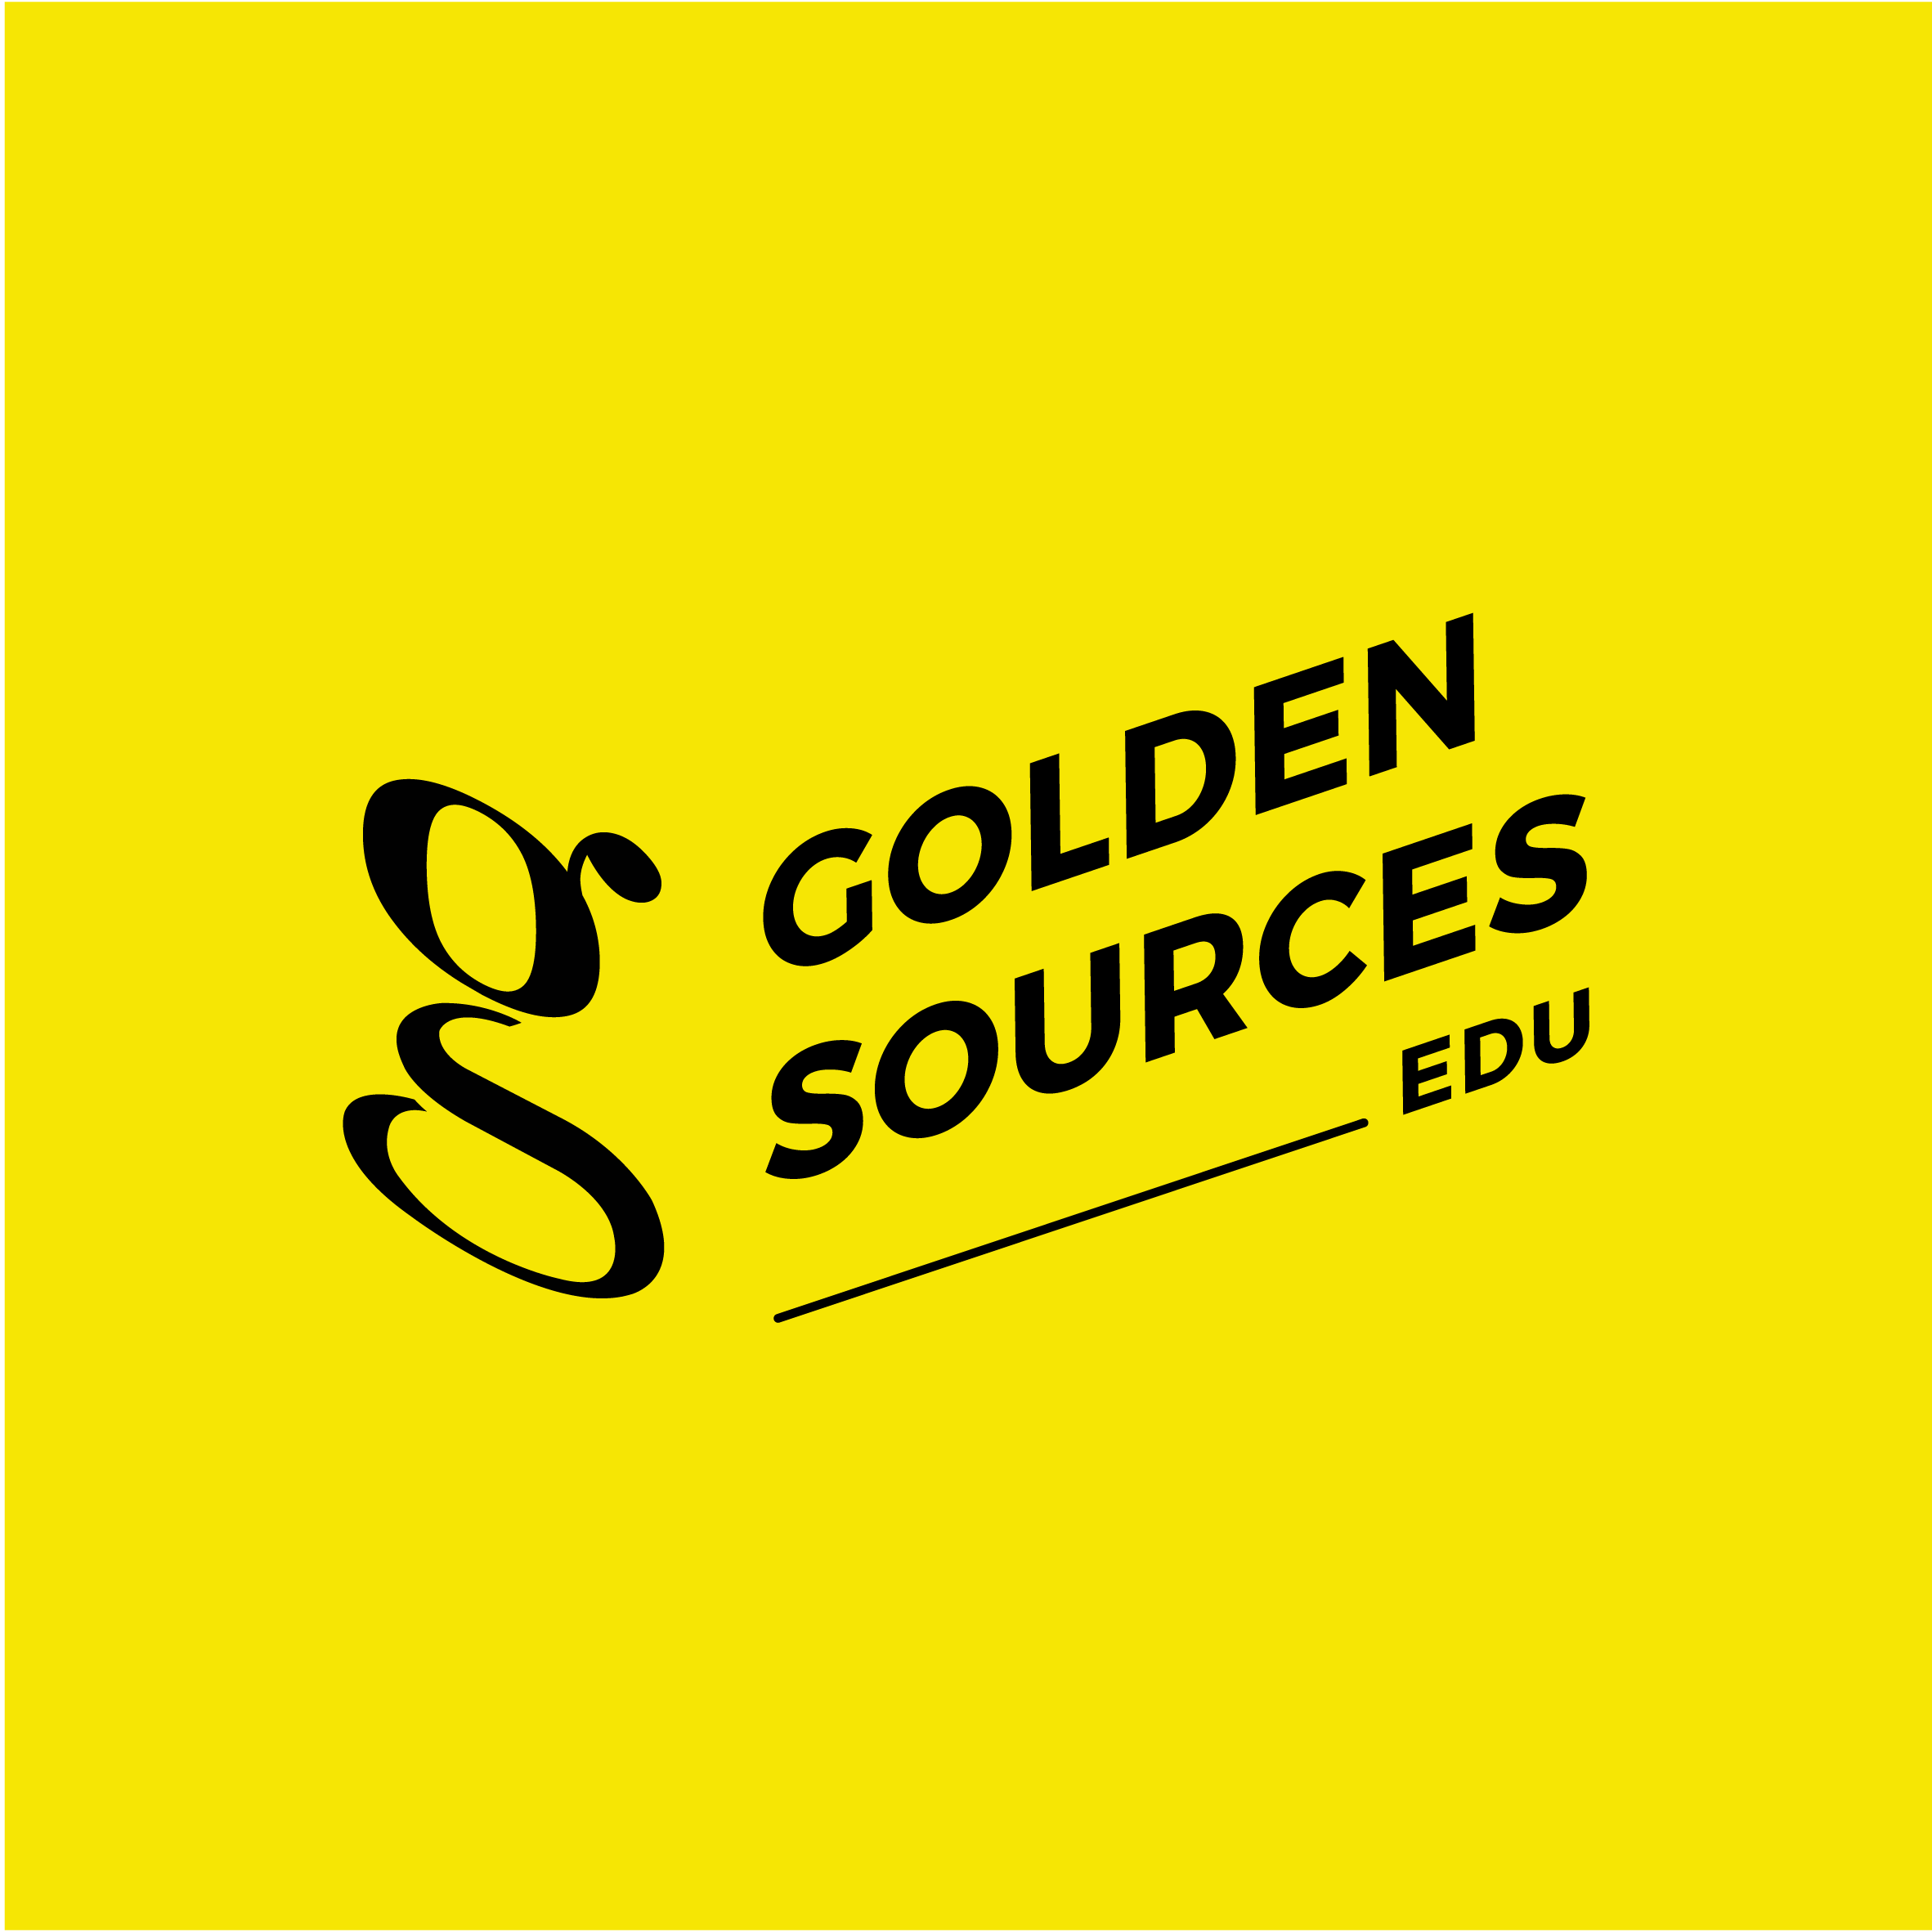 Golden Sources Edu